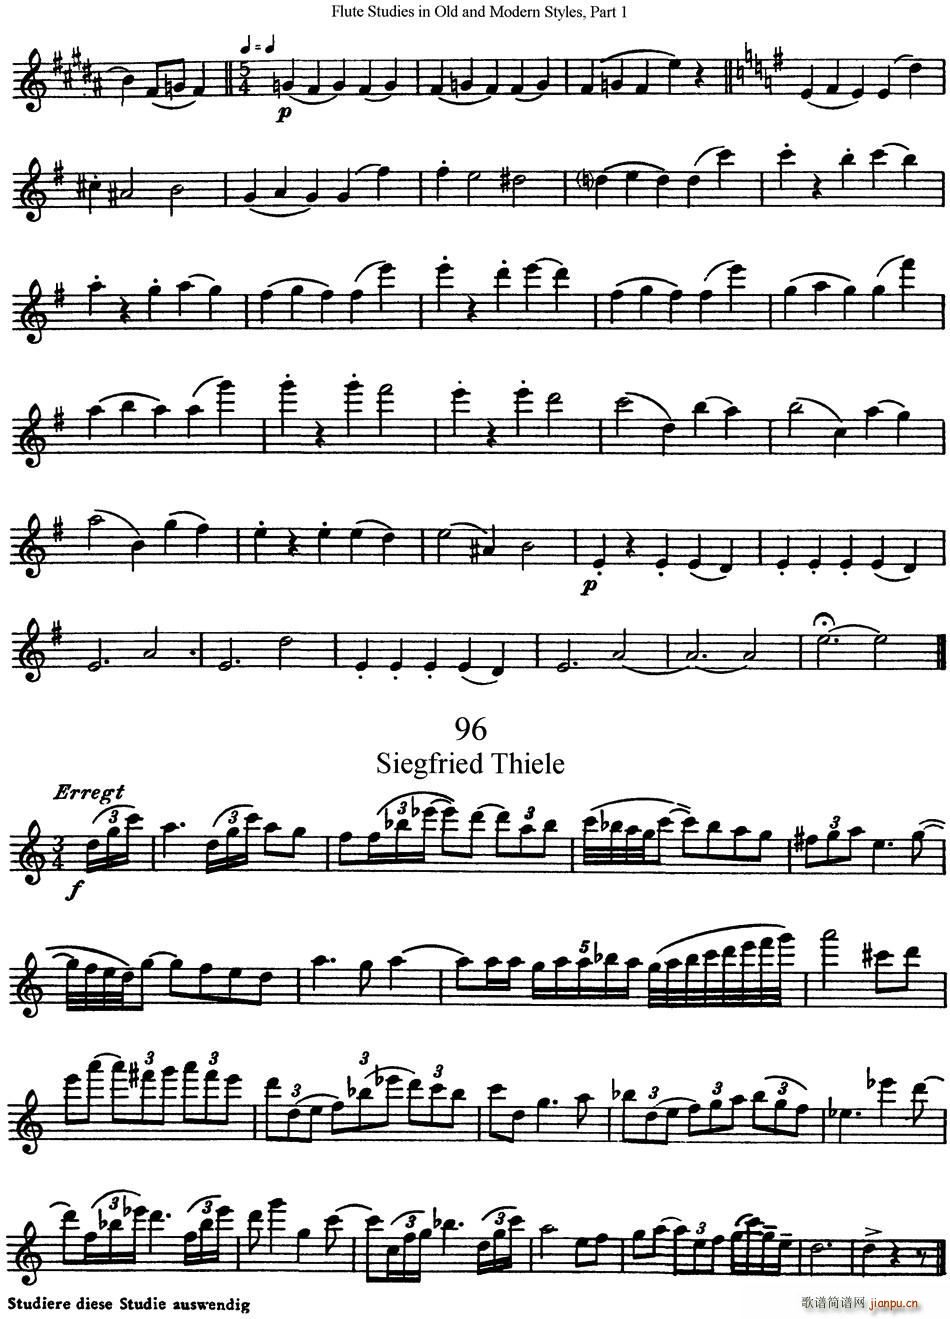 斯勒新老风格长笛练习重奏曲 第一部分 NO 95 NO 96 长笛 2